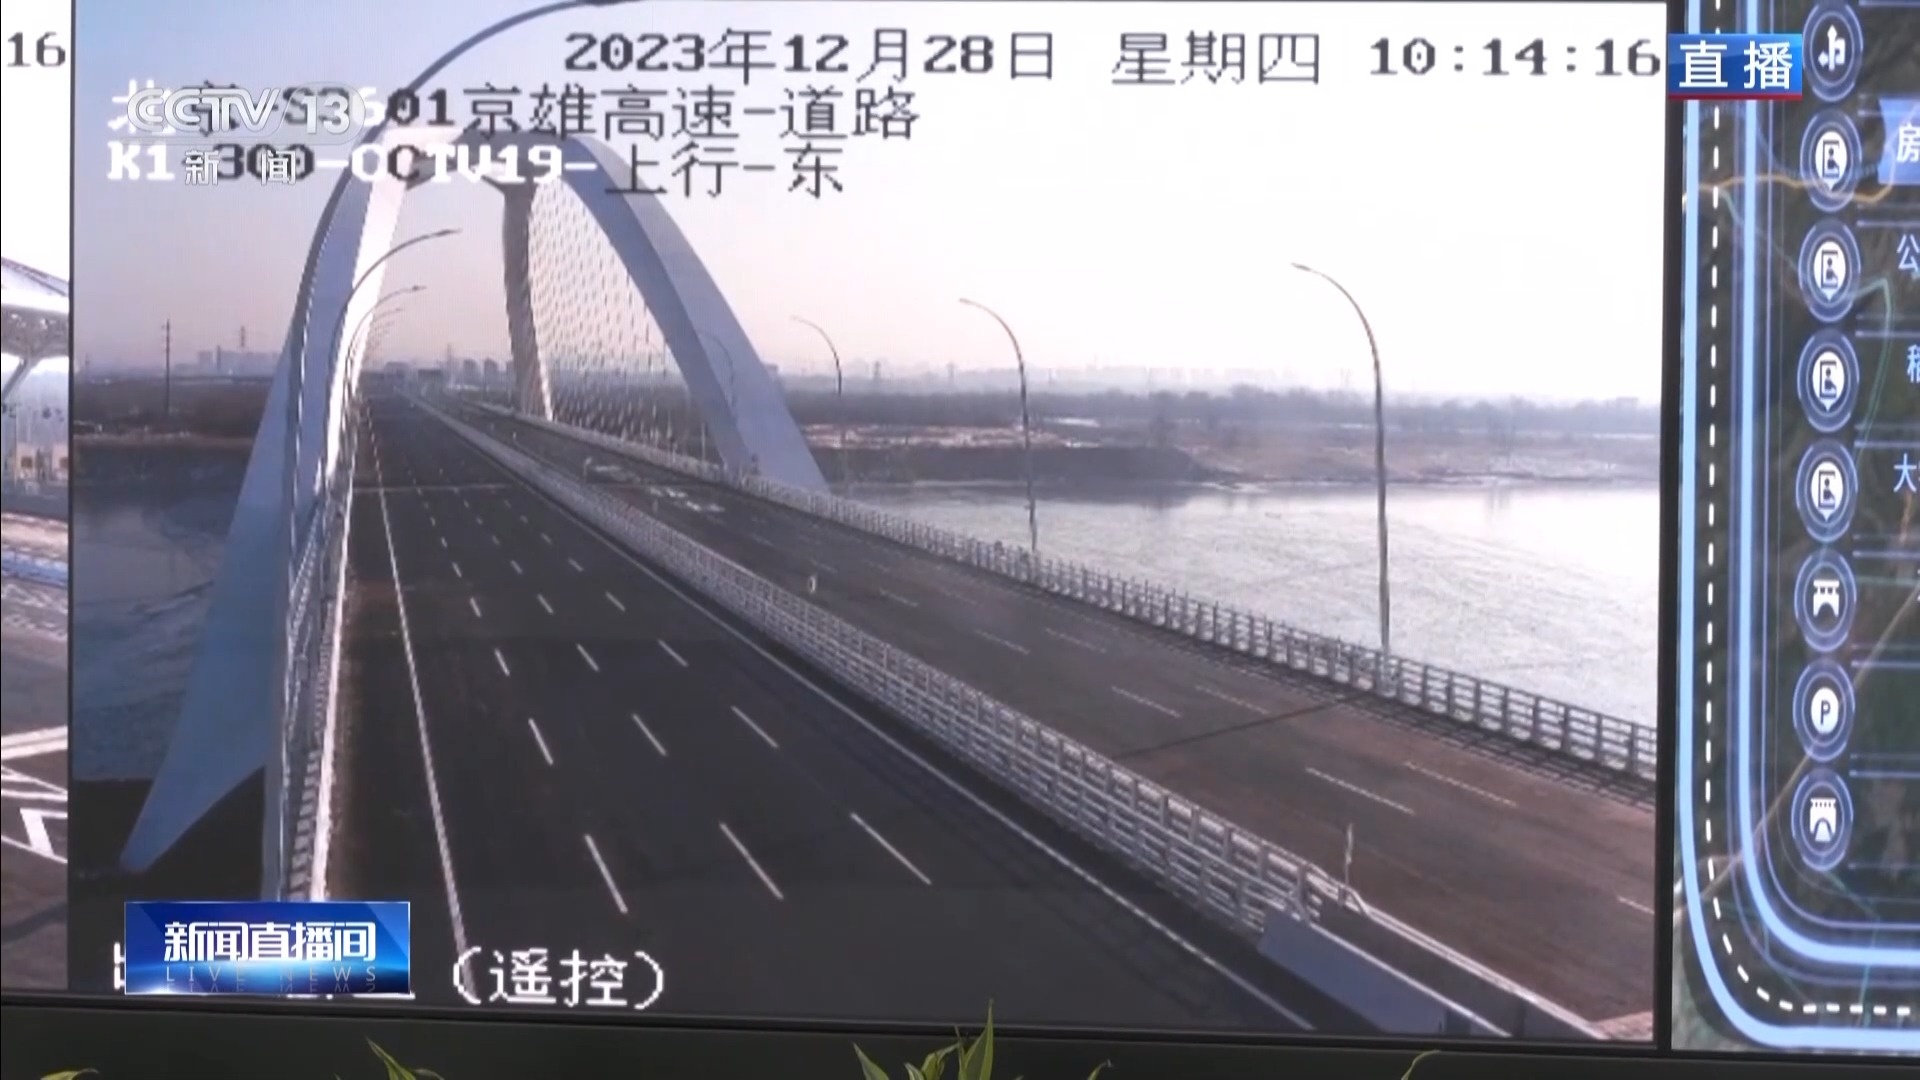 作为我国示范性“智慧公路” 京雄高速北京段“聪明”在哪？